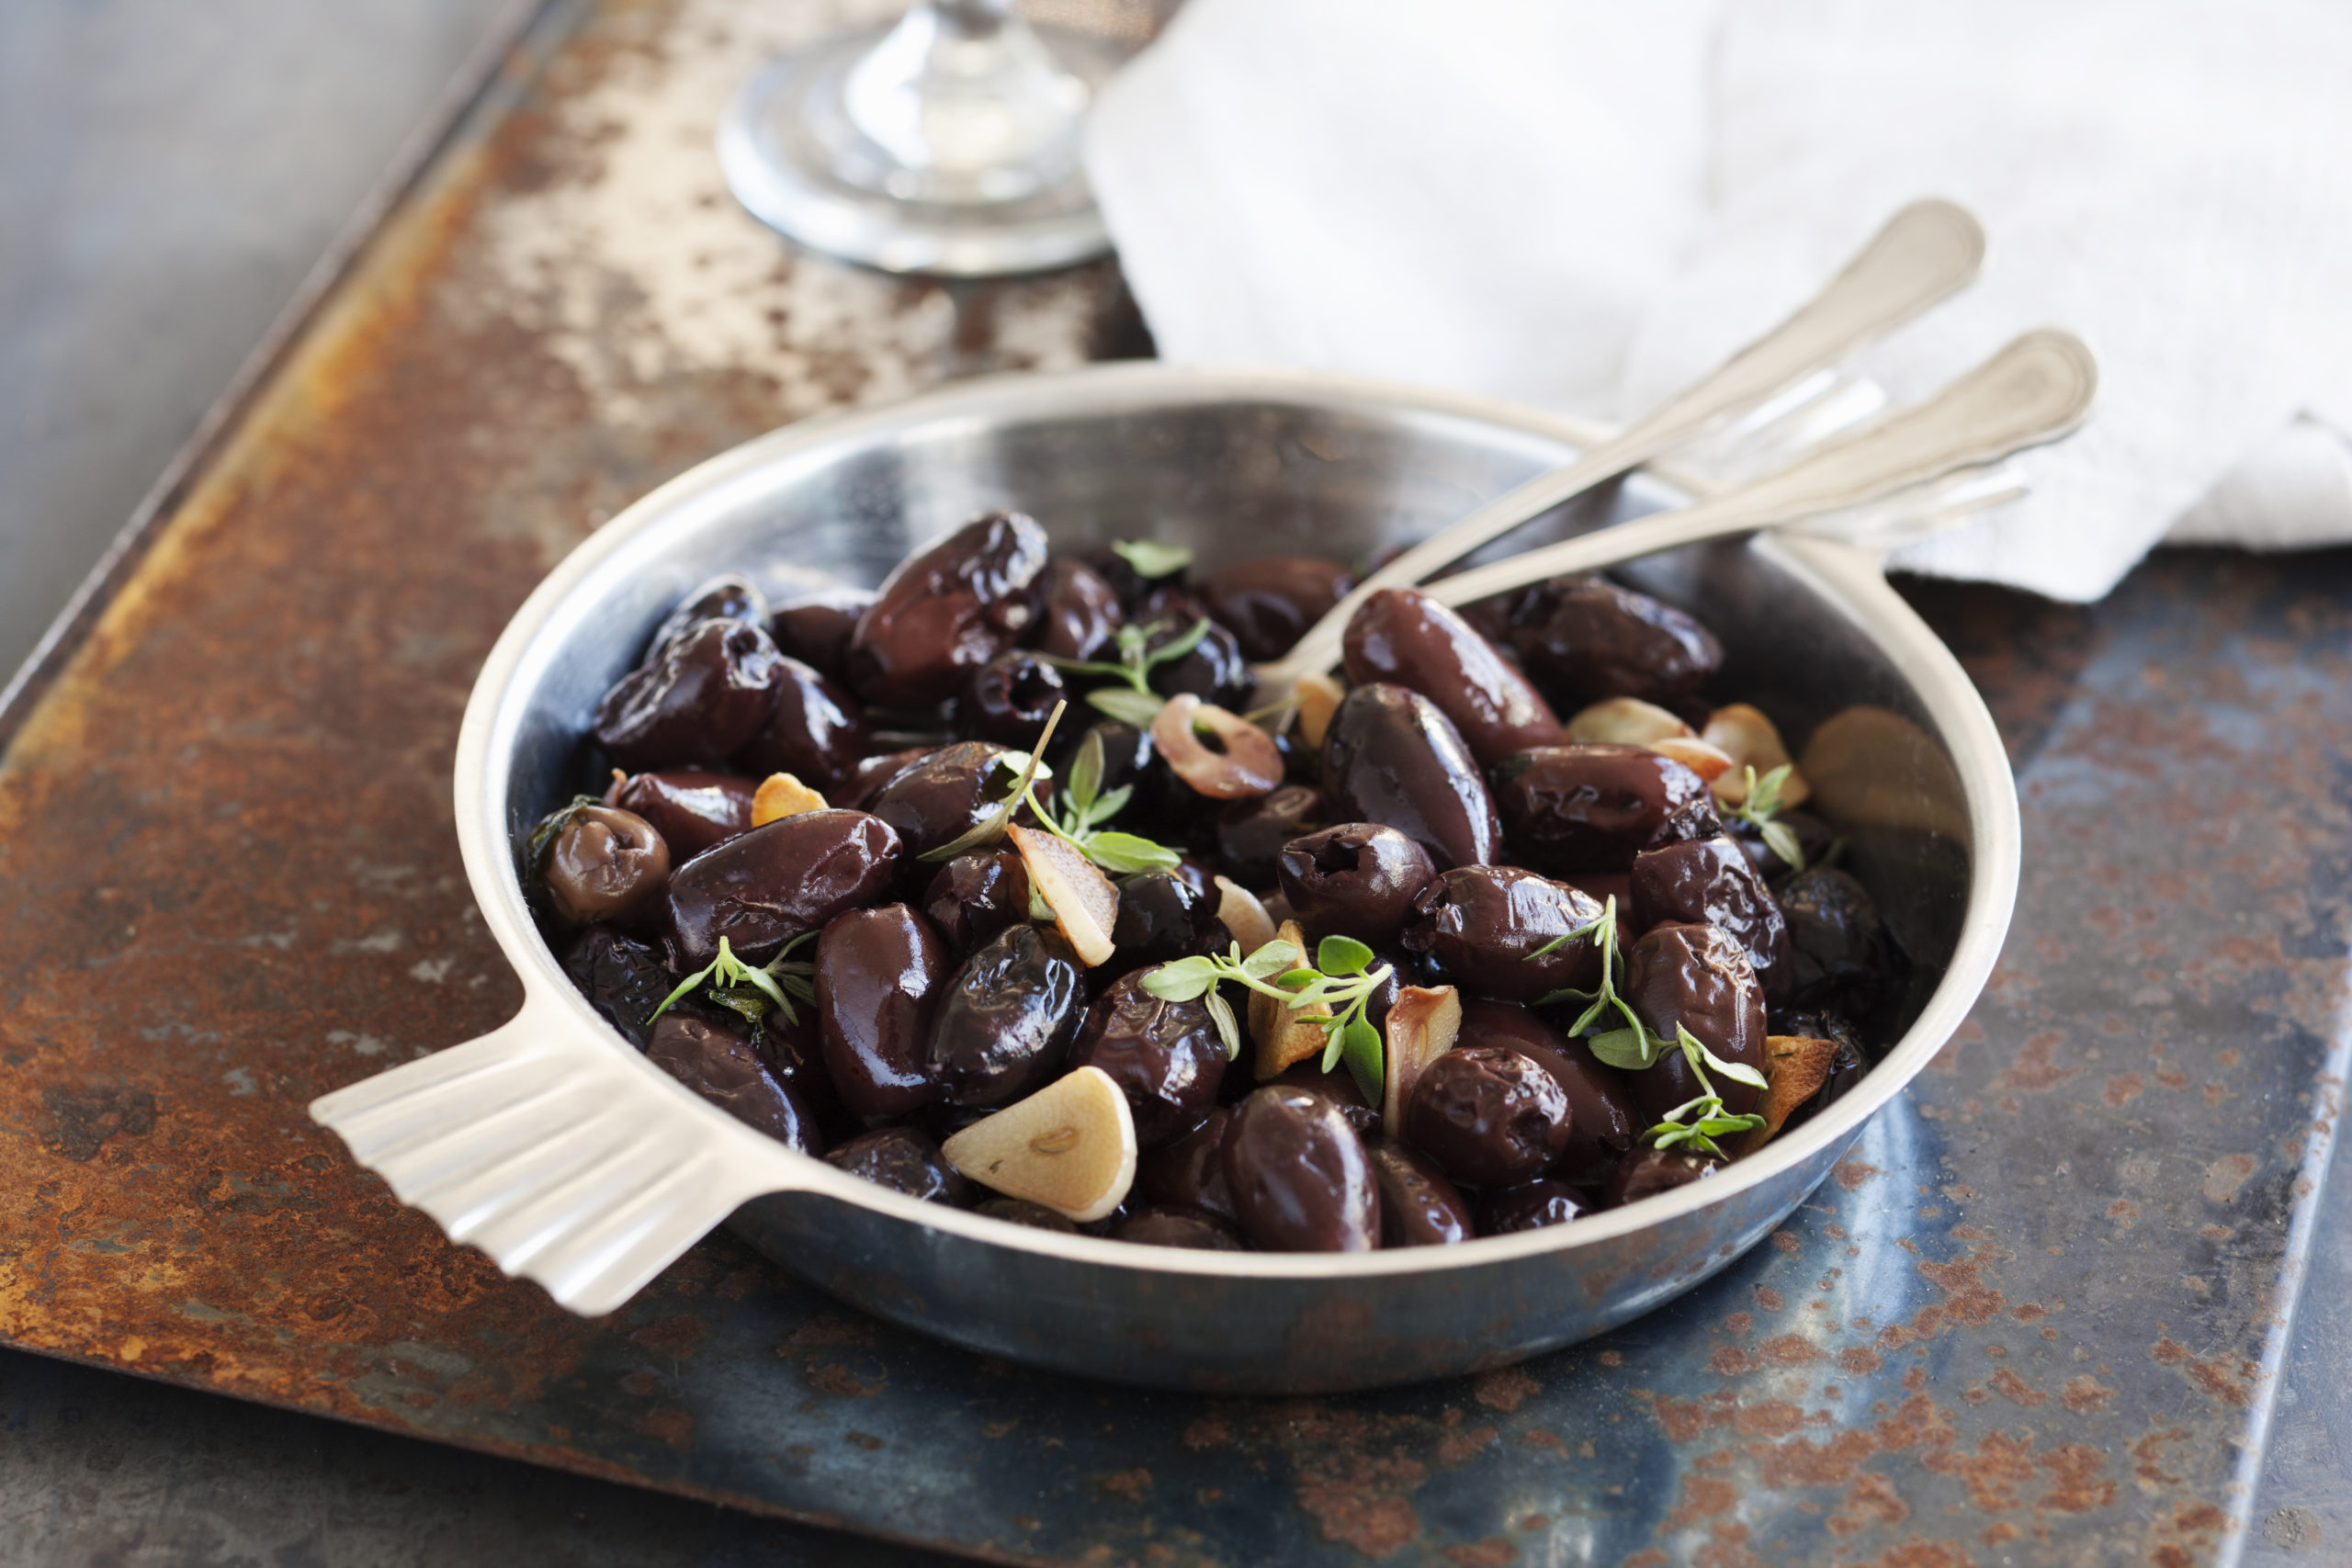 Recept från Zeta. Ugnsbakade oliver